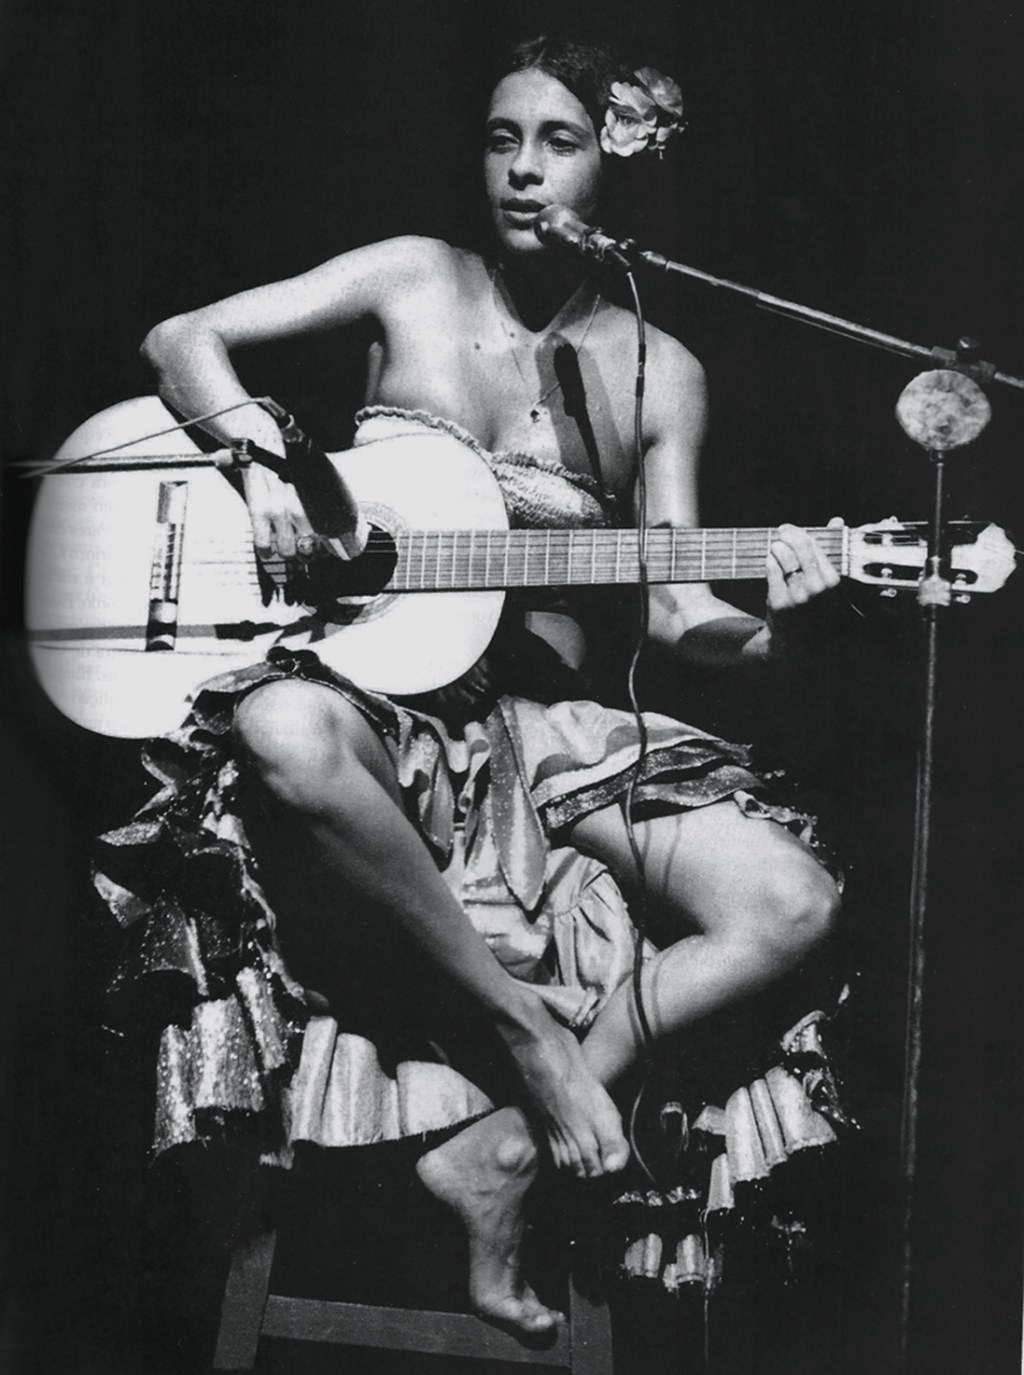 OUSADIA - Gal na famosa imagem dos anos 70: ela usou o corpo como bandeira